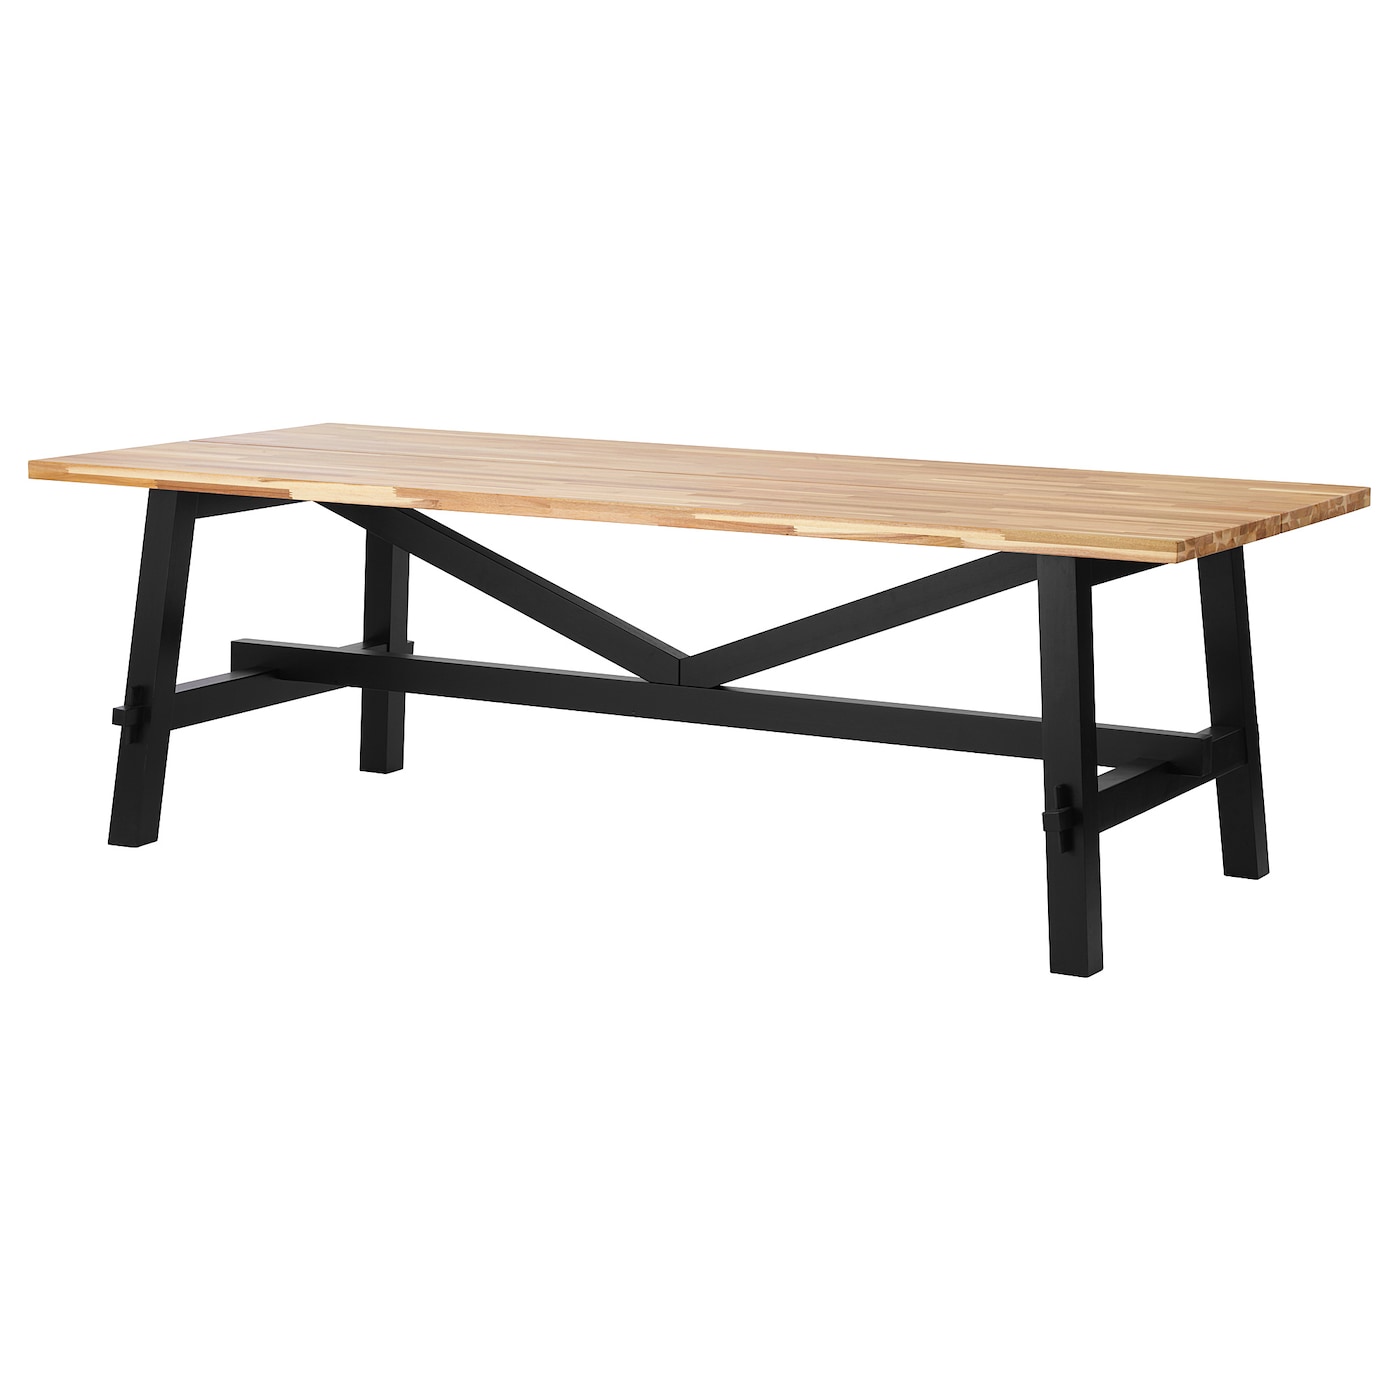 Стол обеденный - IKEA SKOGSTA, 235х100х73 см, коричневый/черный, СКОГСТА ИКЕА